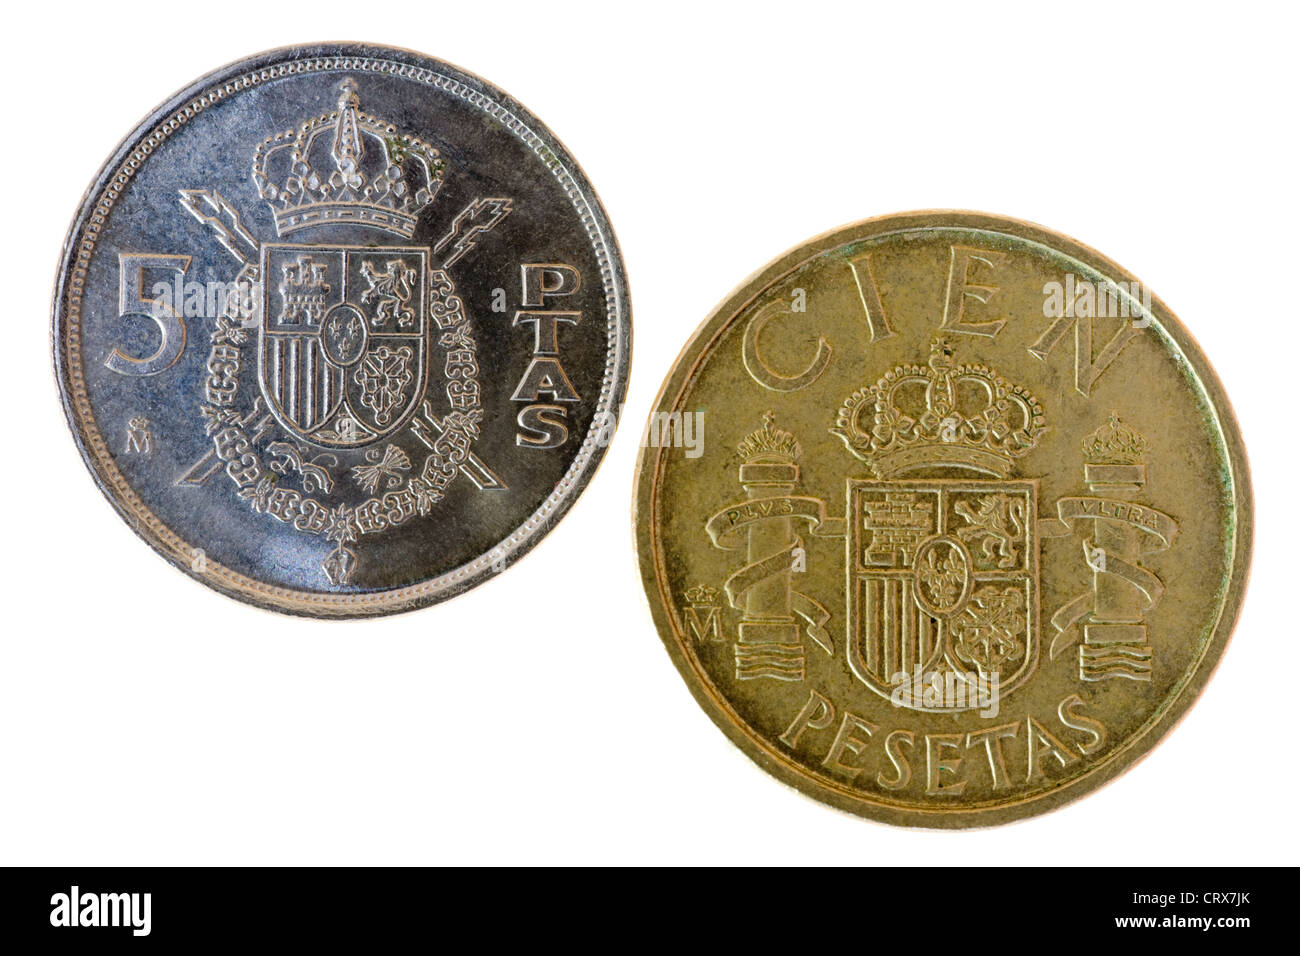 Old Spanish Pesetas coins Stock Photo